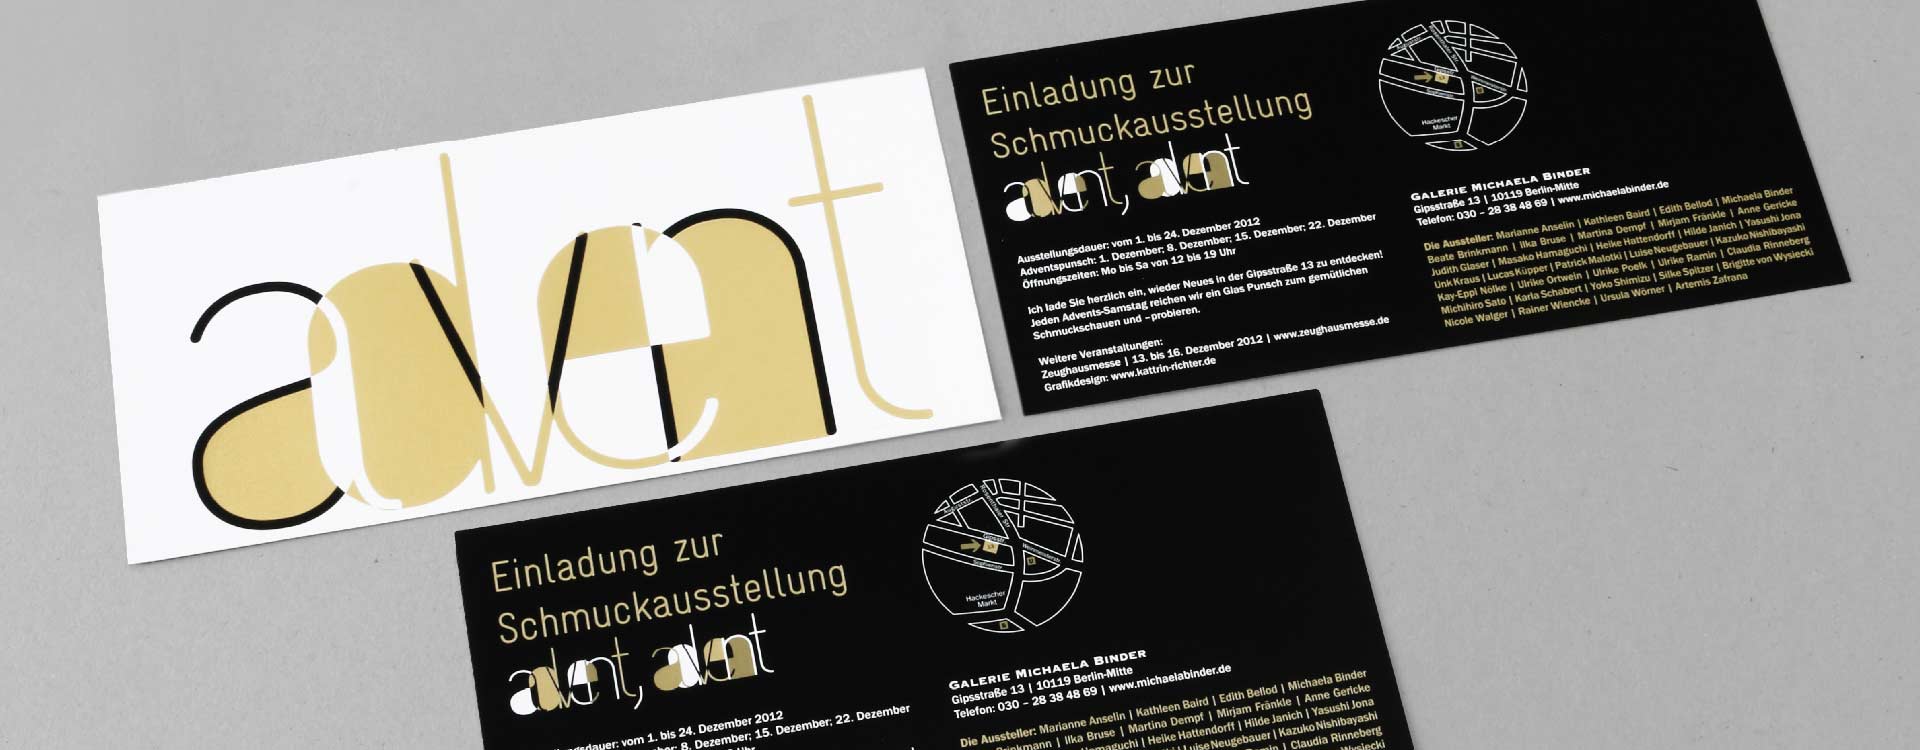 Einladungskarte mit Heißfolienprägung zur Schmuckausstellung 2012 in der Galerie Michaela Binder, Berlin; Design: Kattrin Richter | Büro für Grafikdesign